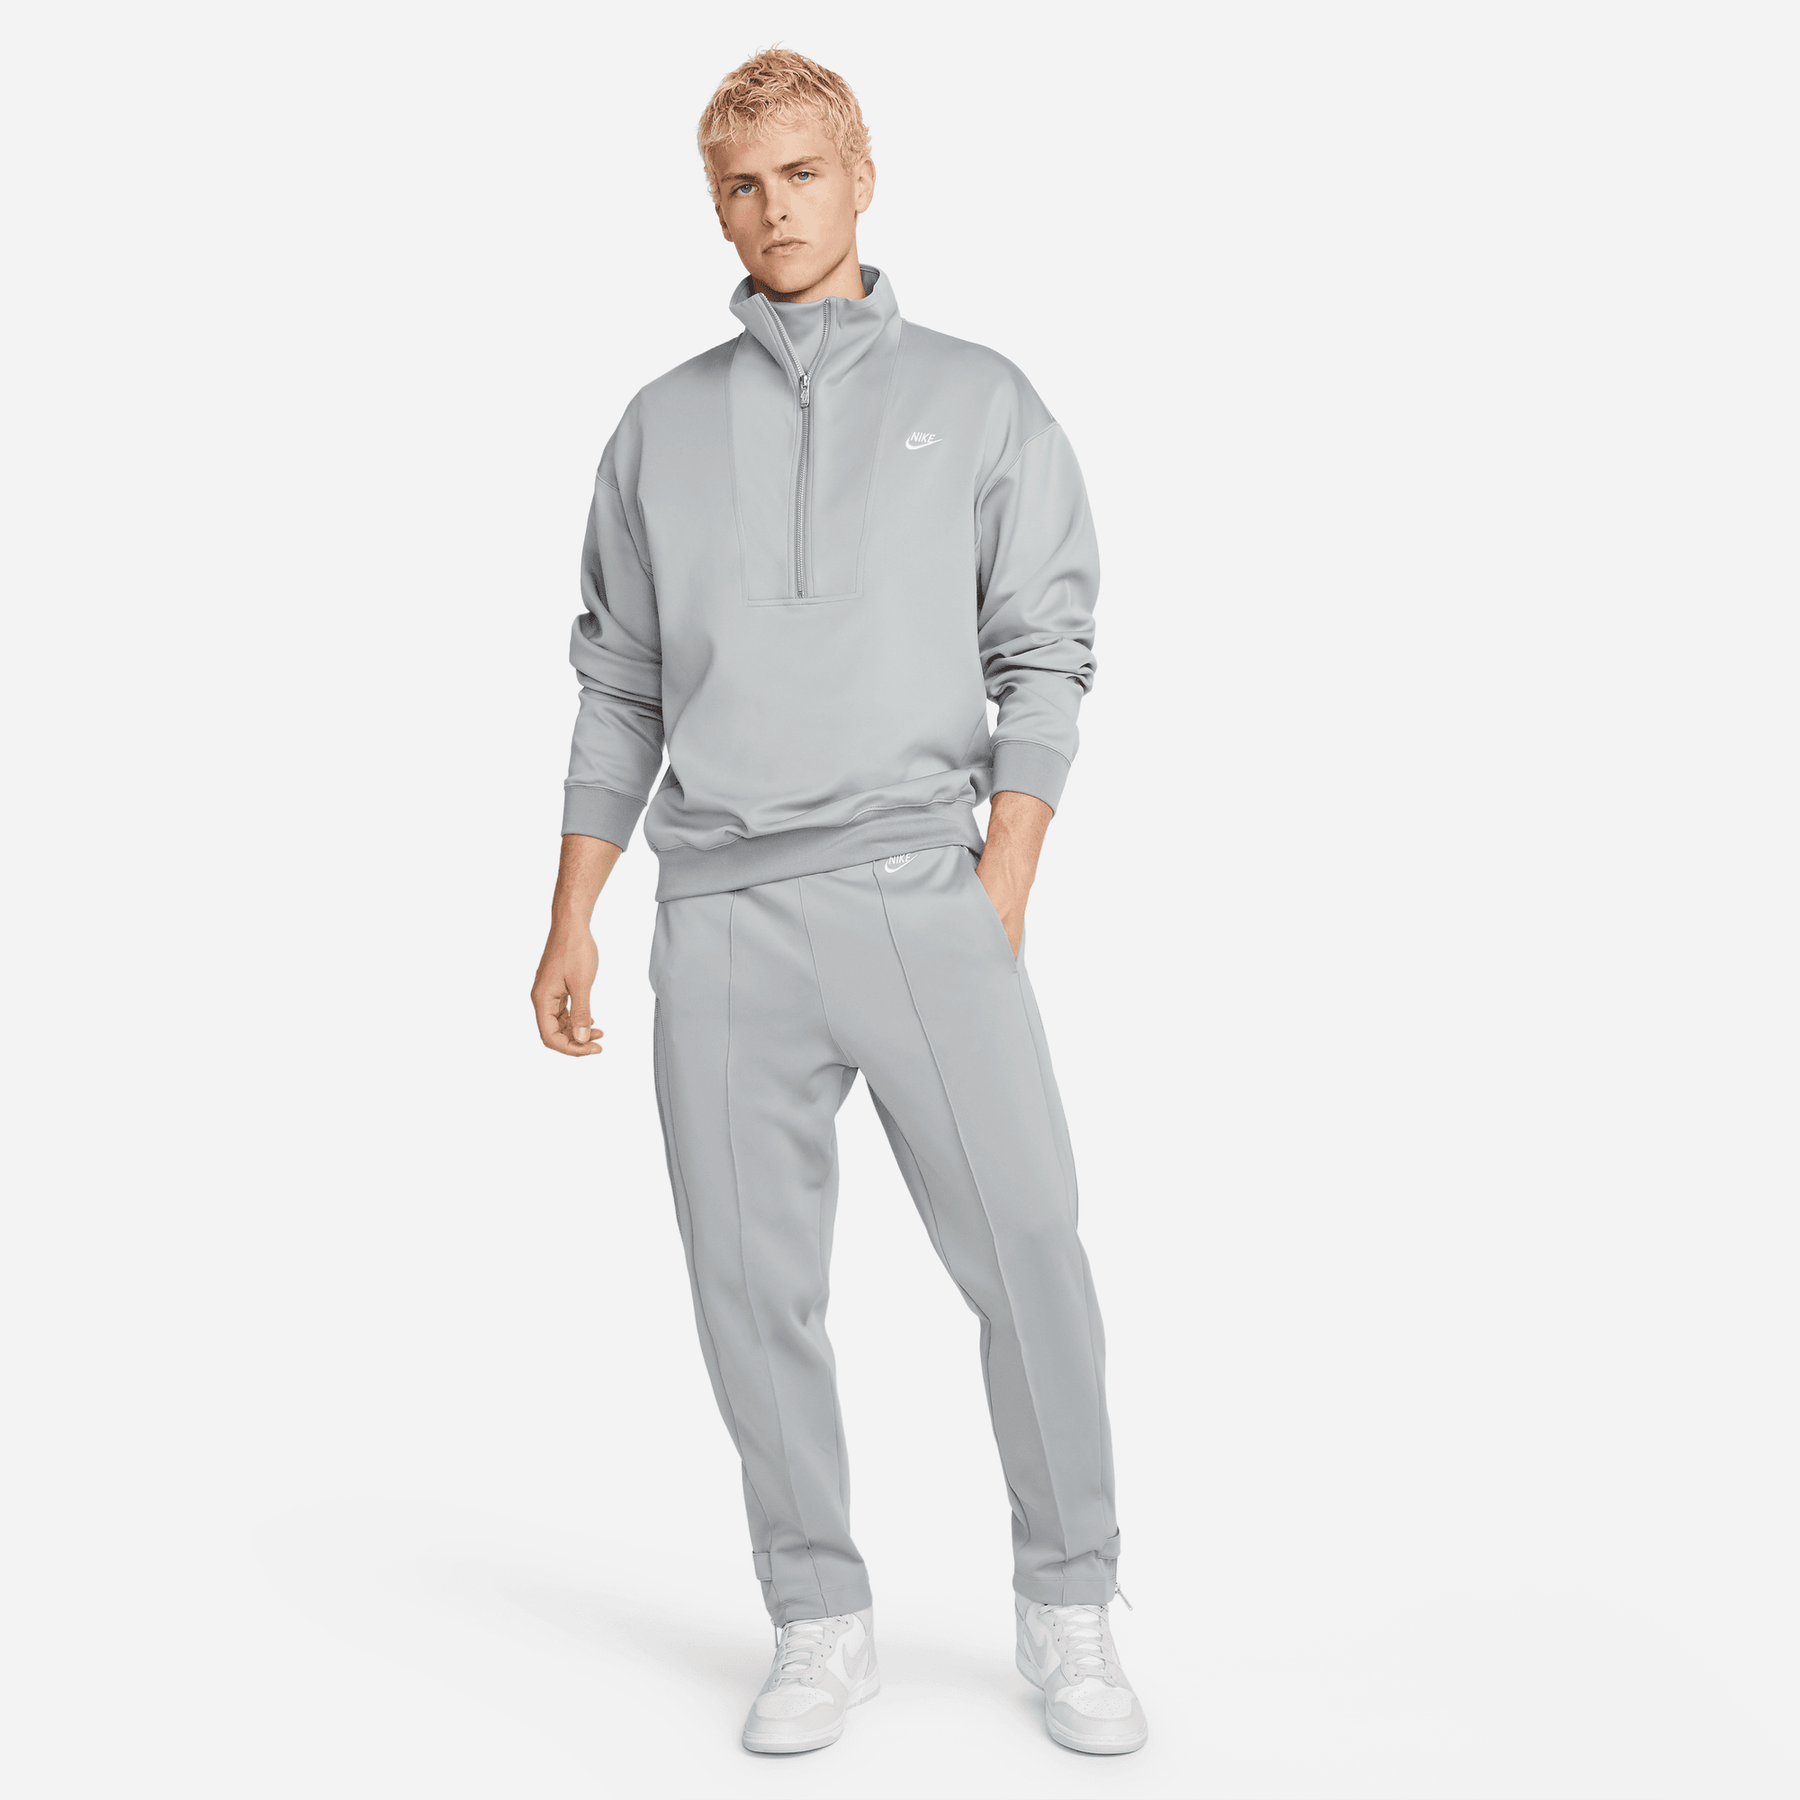 Trousers Sportswear Grey. Nike CA